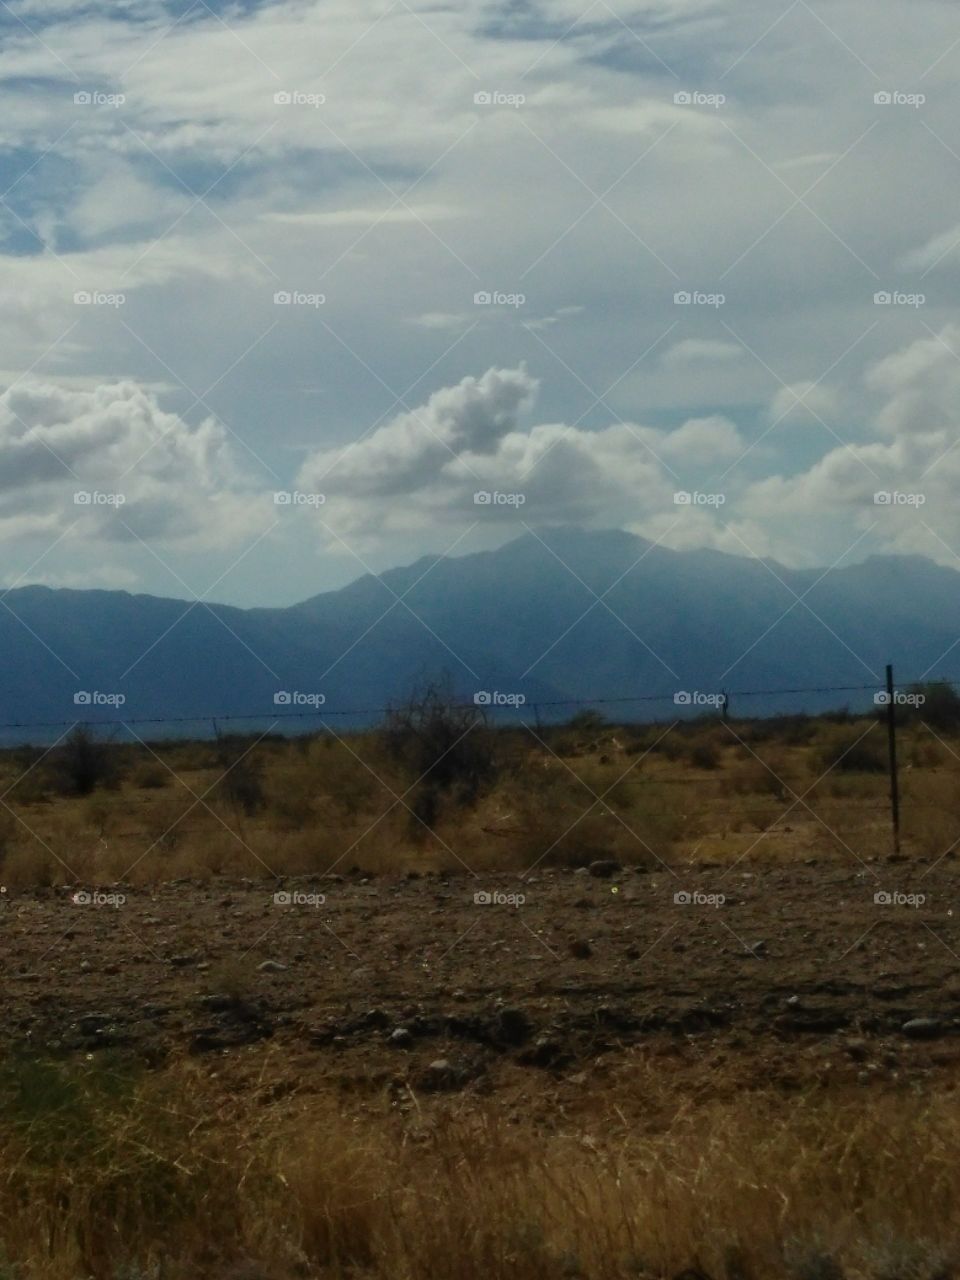 Estrella mountains